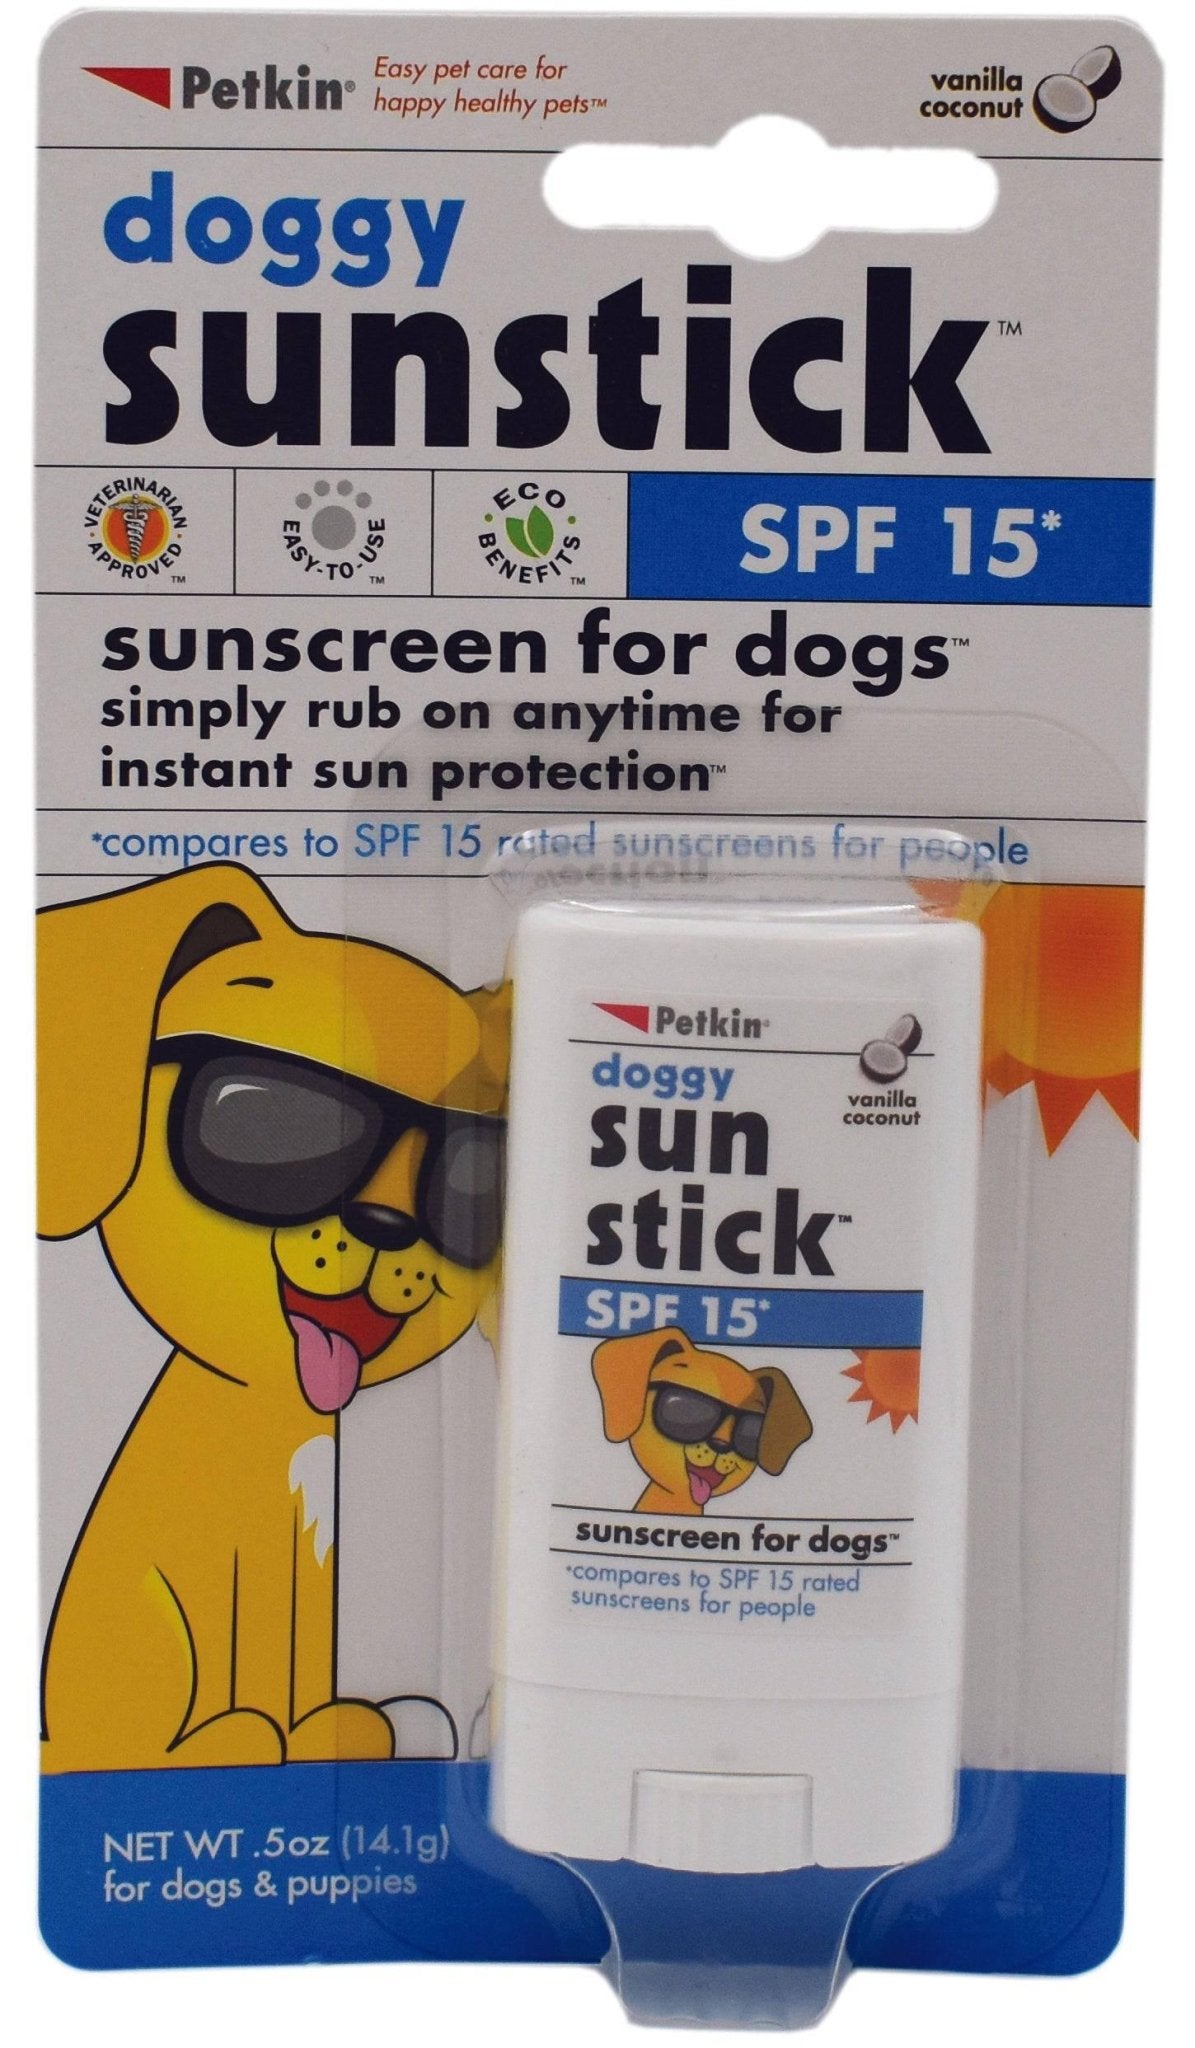 Petkin DOGGY SUN STICK SP15* 14.1g - The Dog Shop Warners Bay